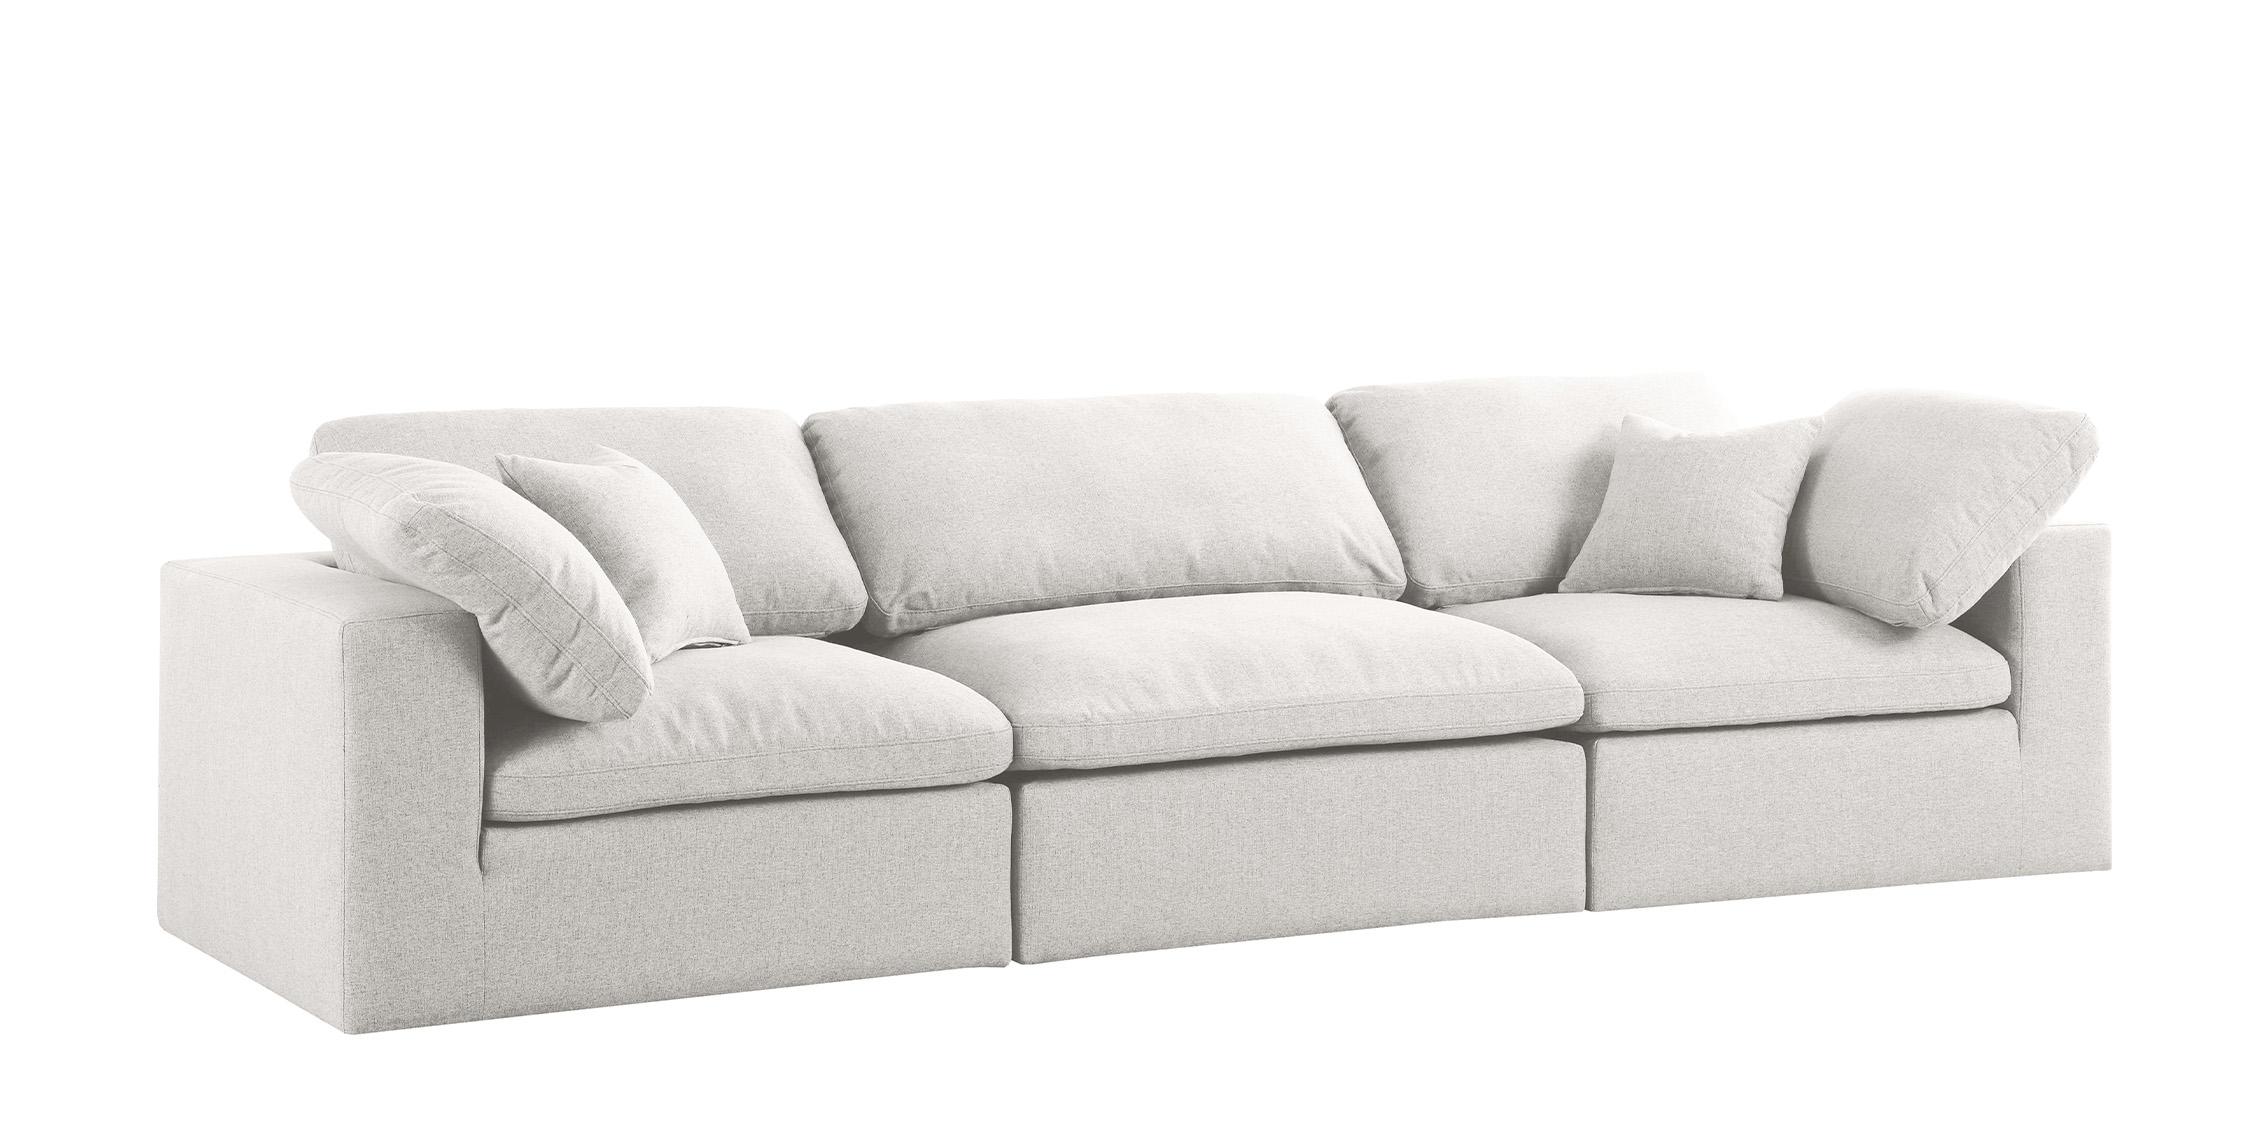 

    
Serene Cream Linen Textured Fabric Deluxe Comfort Modular Sofa S119 Meridian
